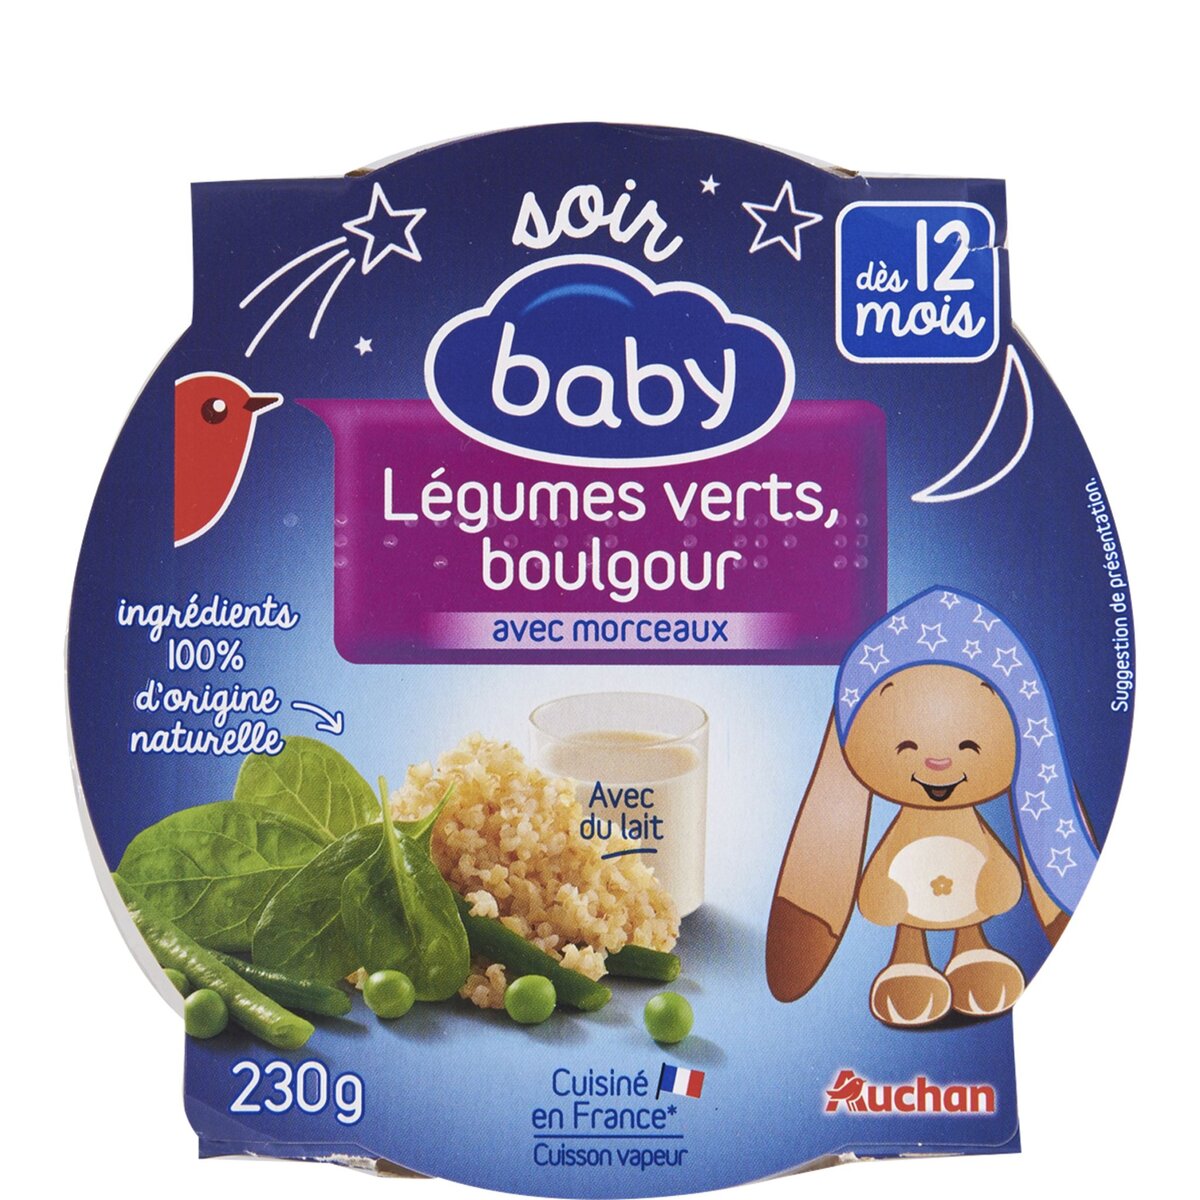 AUCHAN BABY Auchan baby Assiette de légumes verts et boulgour dès 12 mois 230g 230g